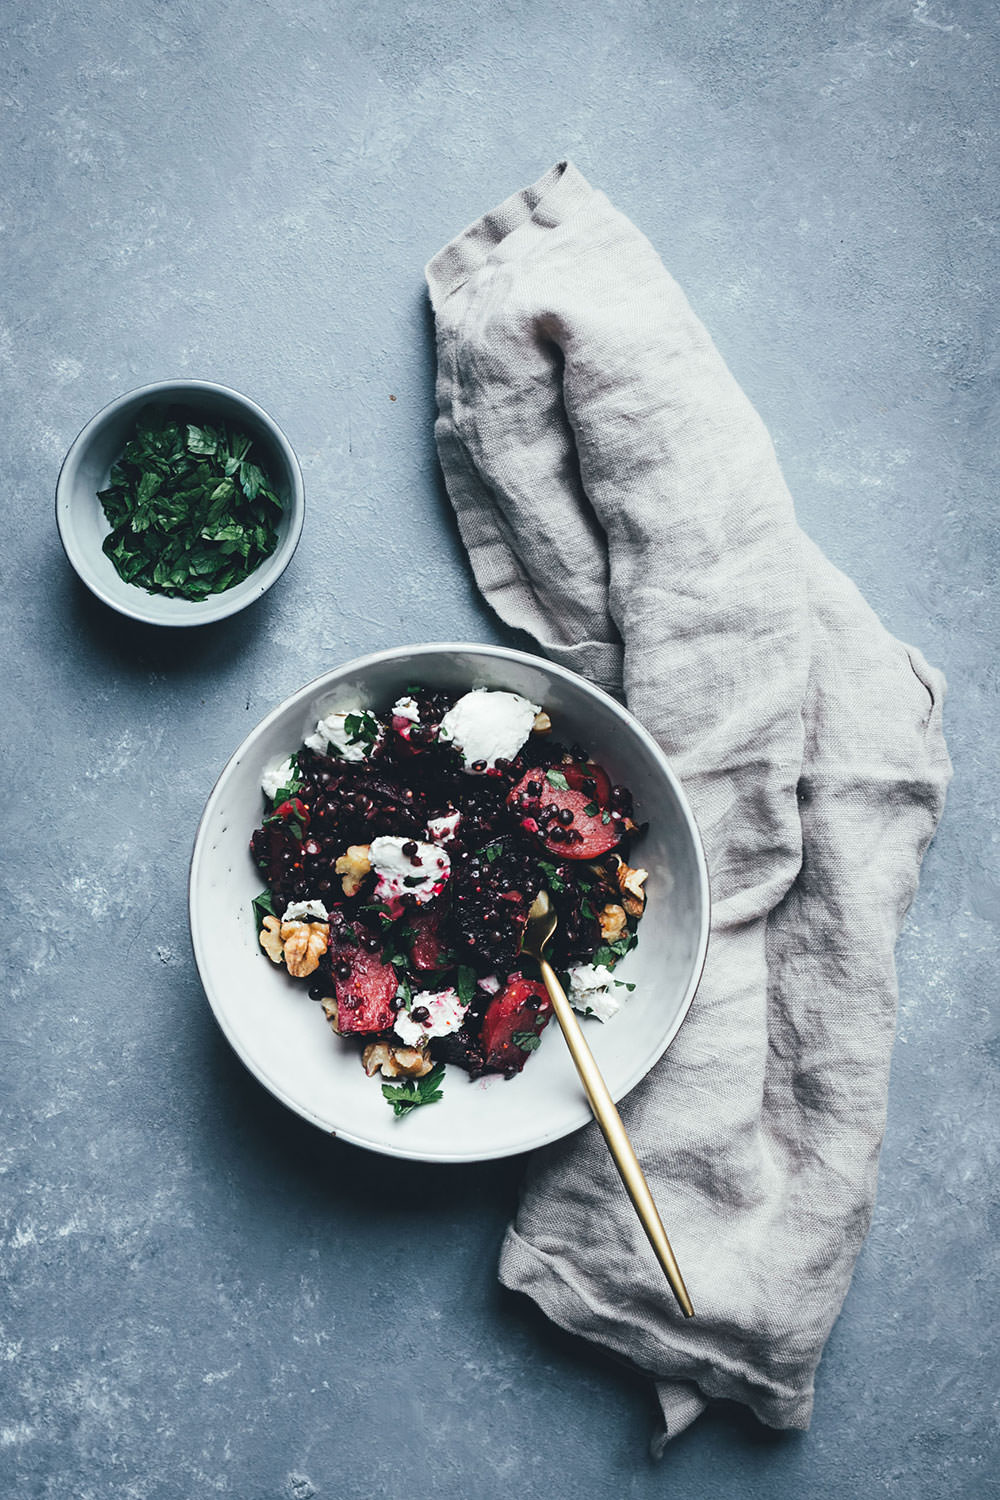 Rezept für winterlichen Bunte-Bete-Linsen-Salat mit gebackener roter und gelber Bete, Walnusskernen, Belugalinsen und Ziegenfrischkäse | moeyskitchen.com #linsensalat #salat #rezepte #foodblog